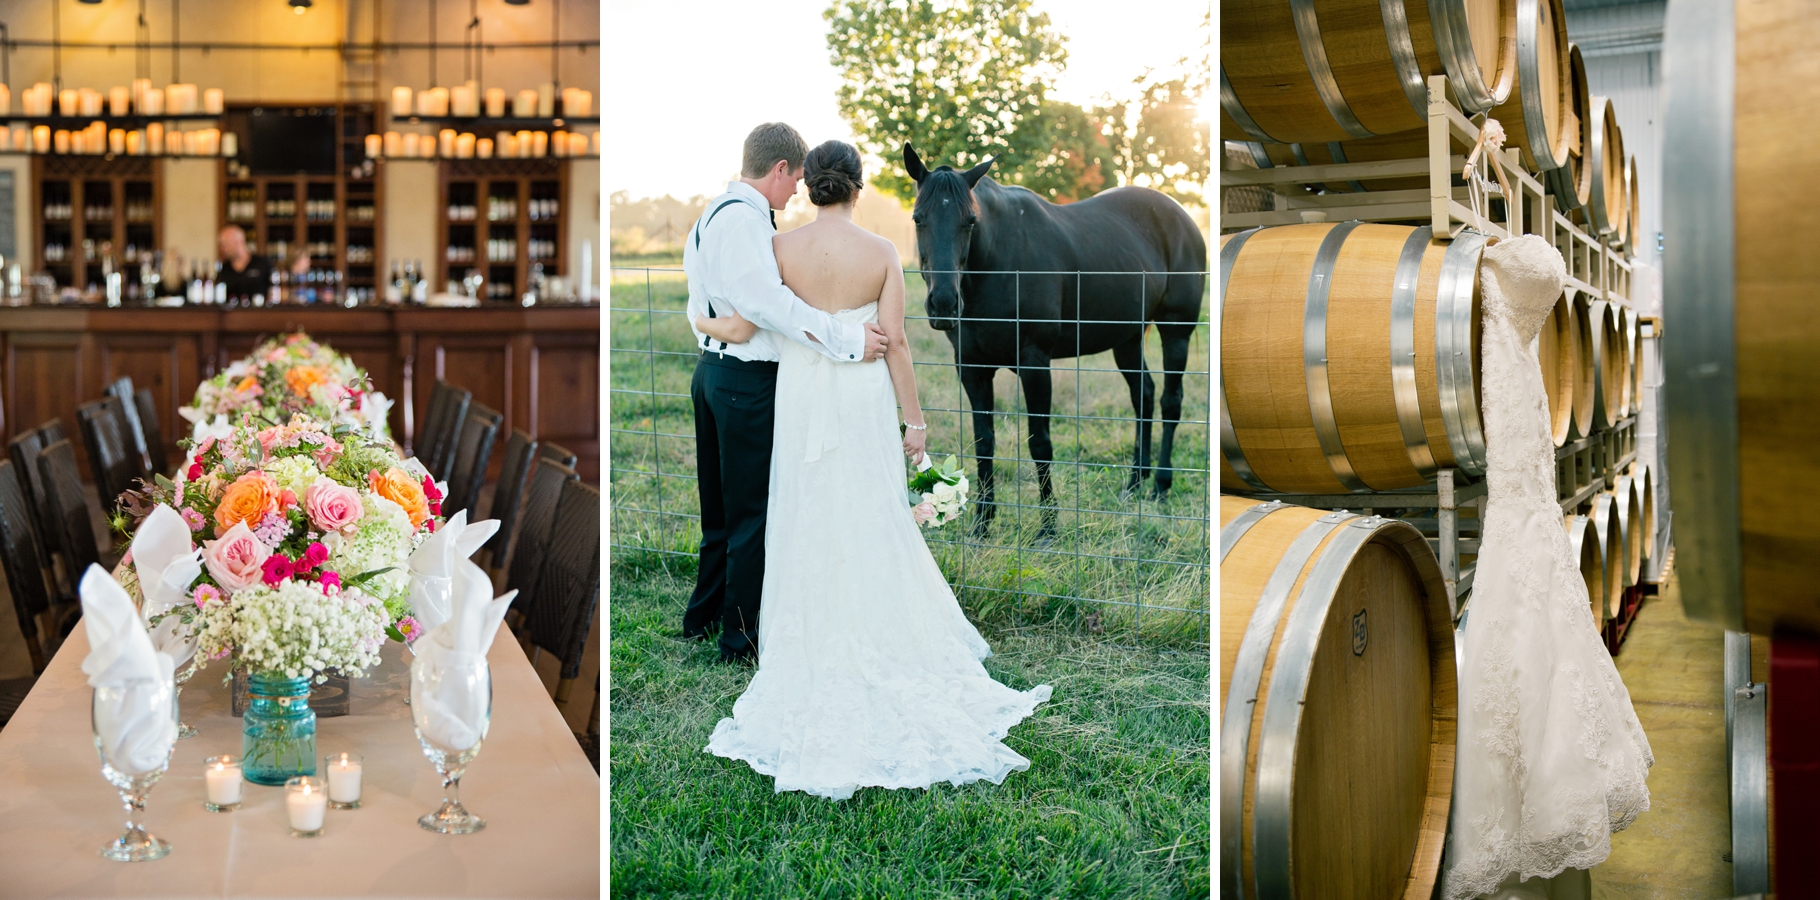 1-Lakeside-Woodland-Farm-Snohomish-Wedding-Horses-Bride-Groom-Photographer-Seattle-Wedding-Photography-by-Betty-Elaine